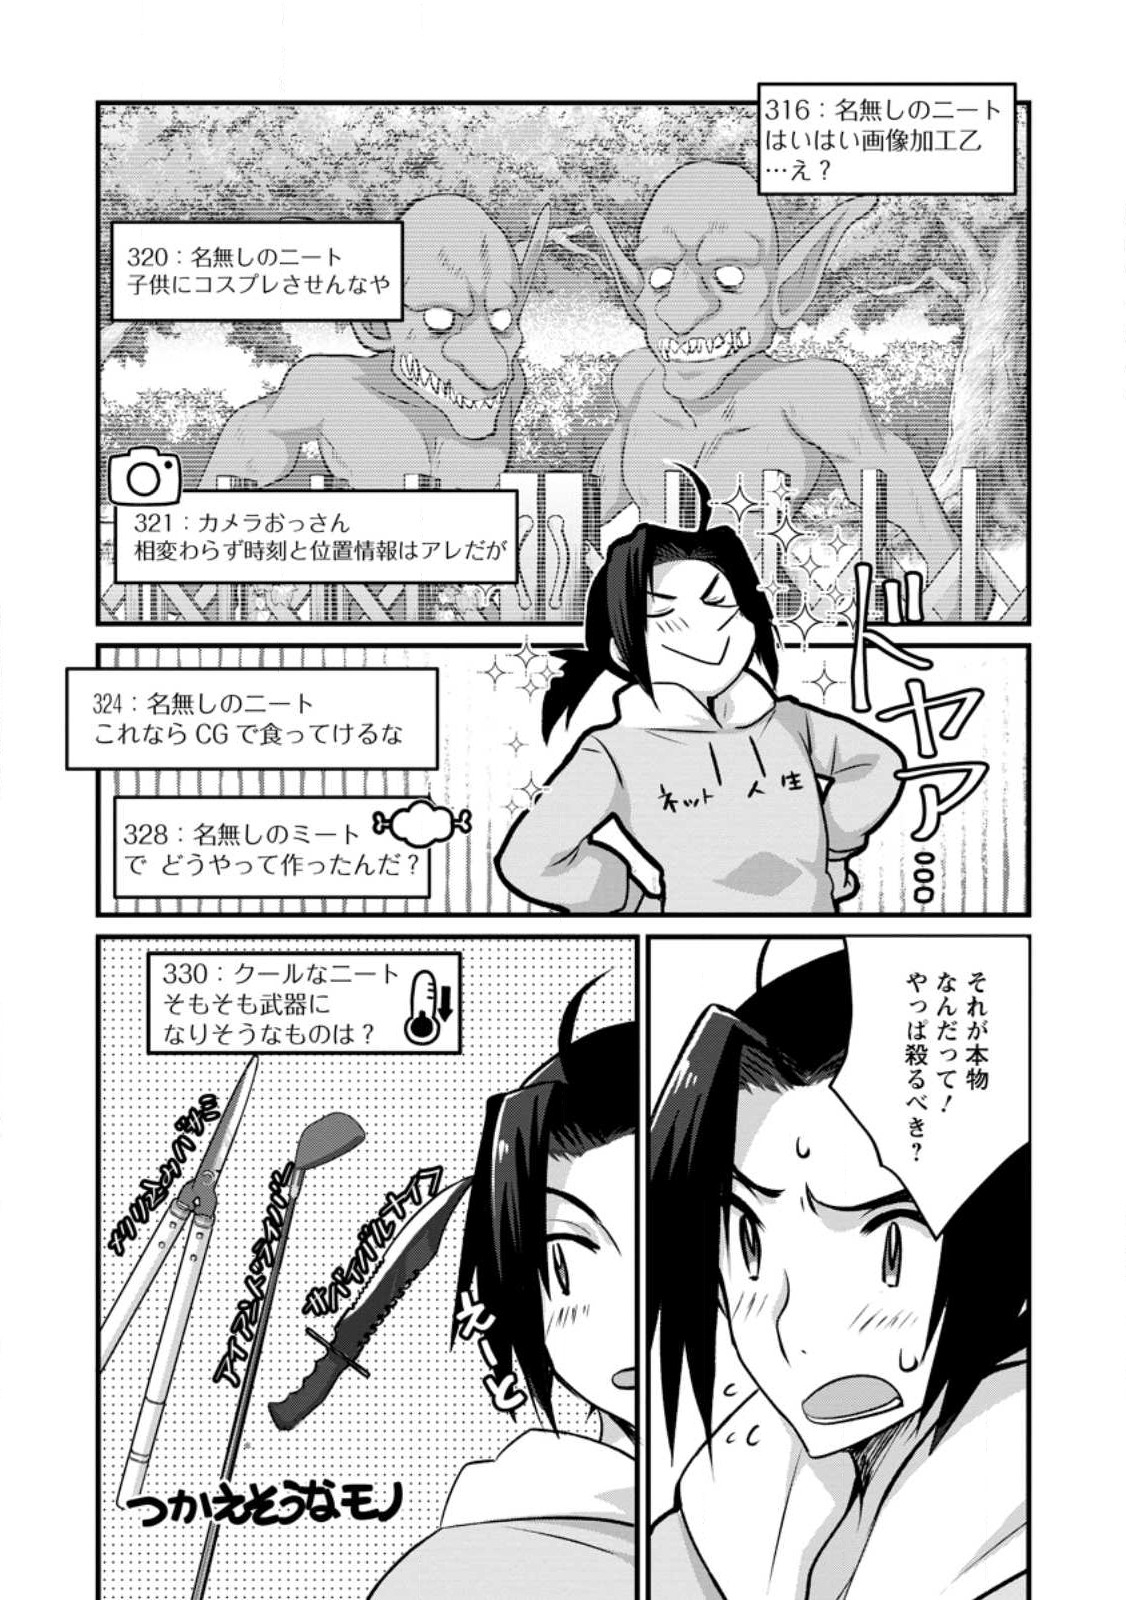 10-nen Goshi no HikiNEET wo Yamete Gaishutsu shitara Jitakugo to Isekai ni Tenishiteta - Chapter 1.3 - Page 9